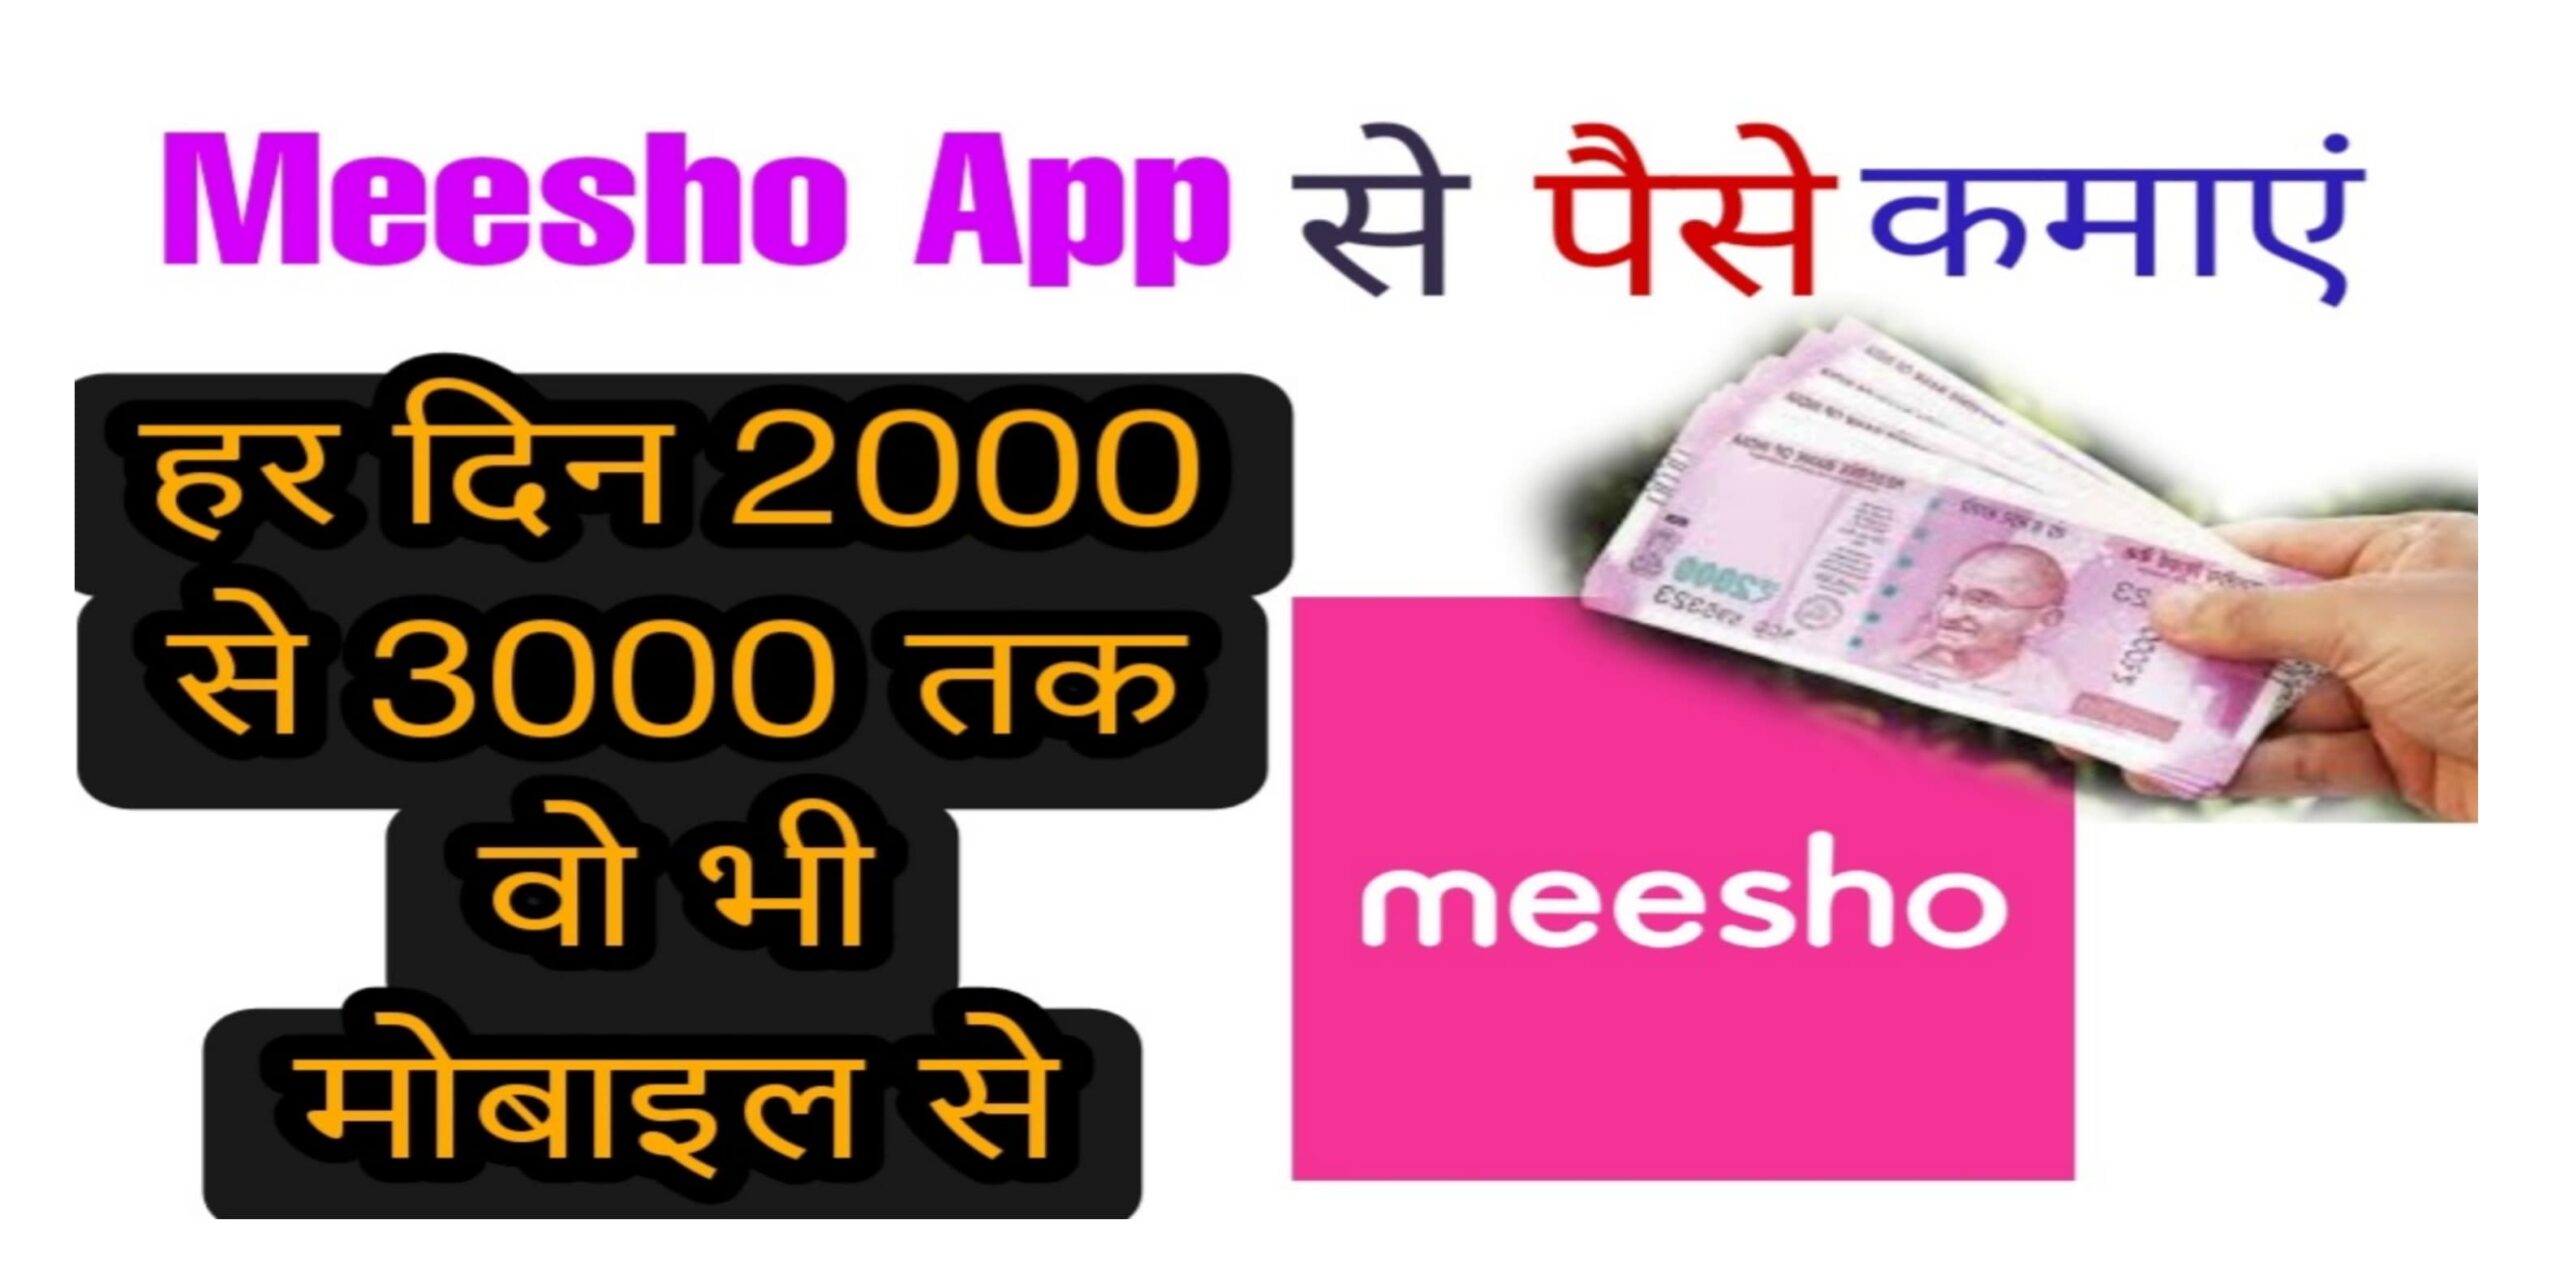 Meesho App se paise kaise kamaye